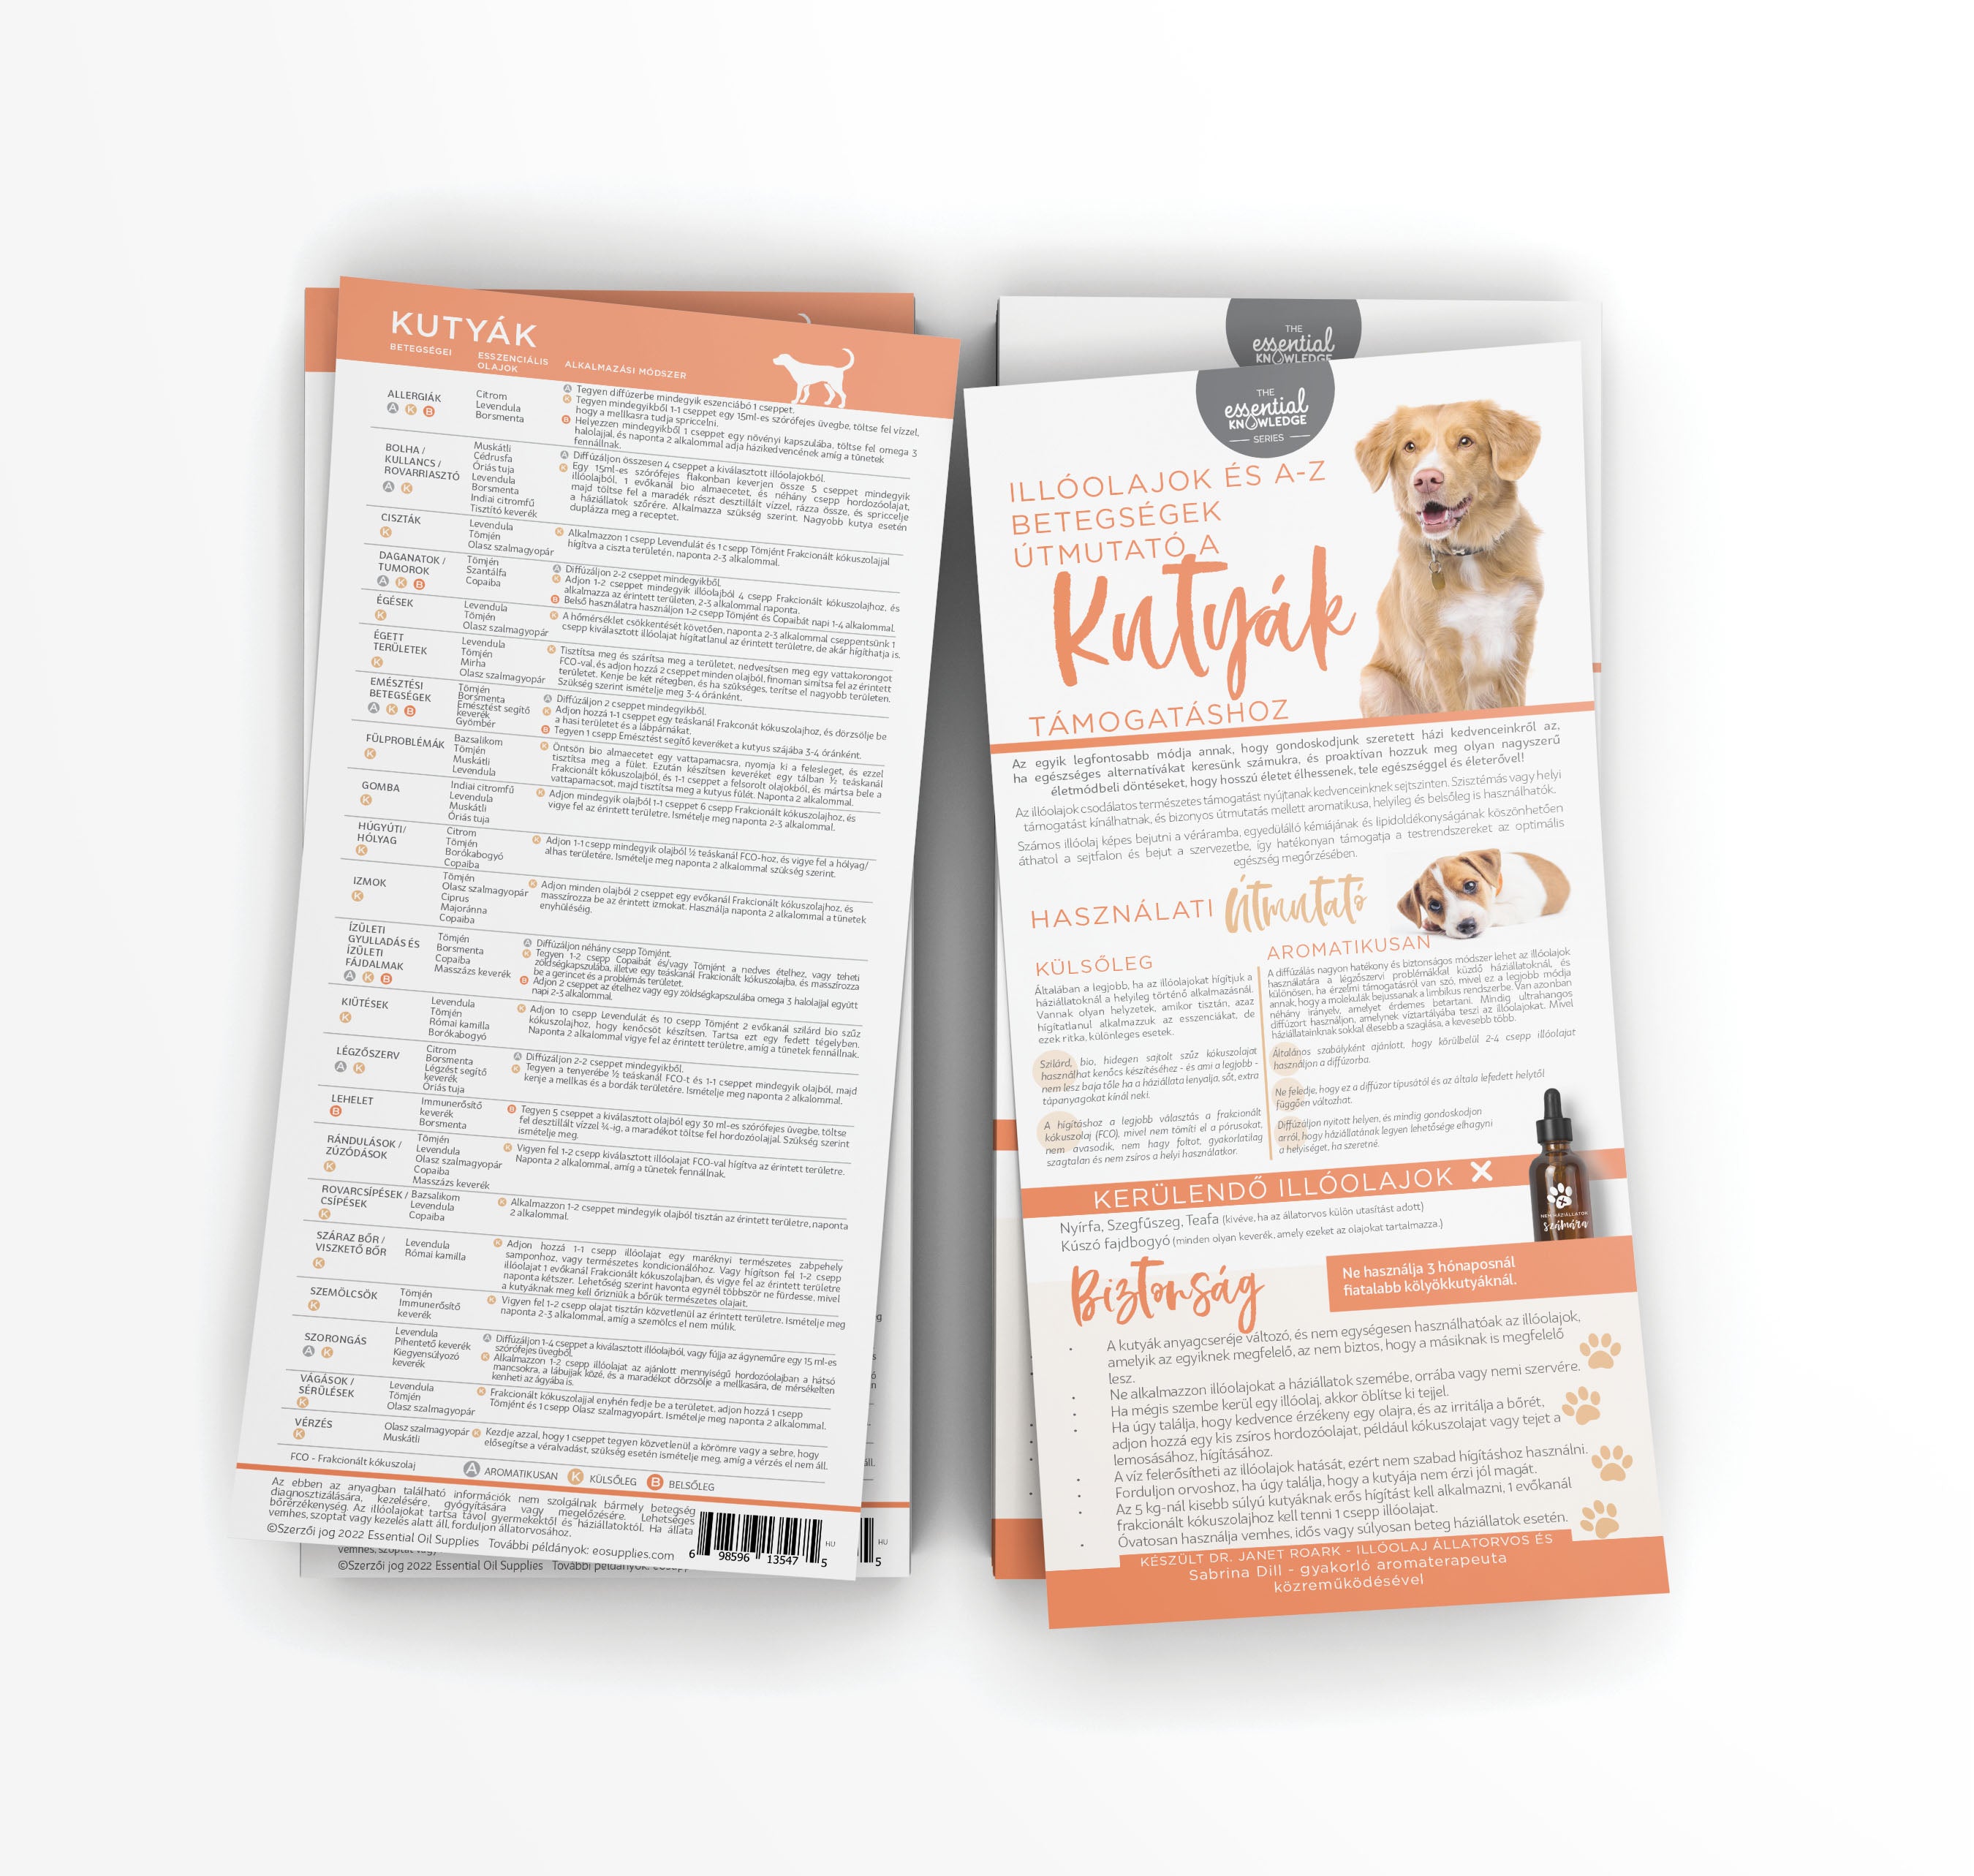 Információs Kártyacsomag (25 darab) - Illóolajok és A-Z betegségek útmutató Kutyáknak - MAGYAR NYELVŰ (2 oldalas) -Essential Knowledge sorozat